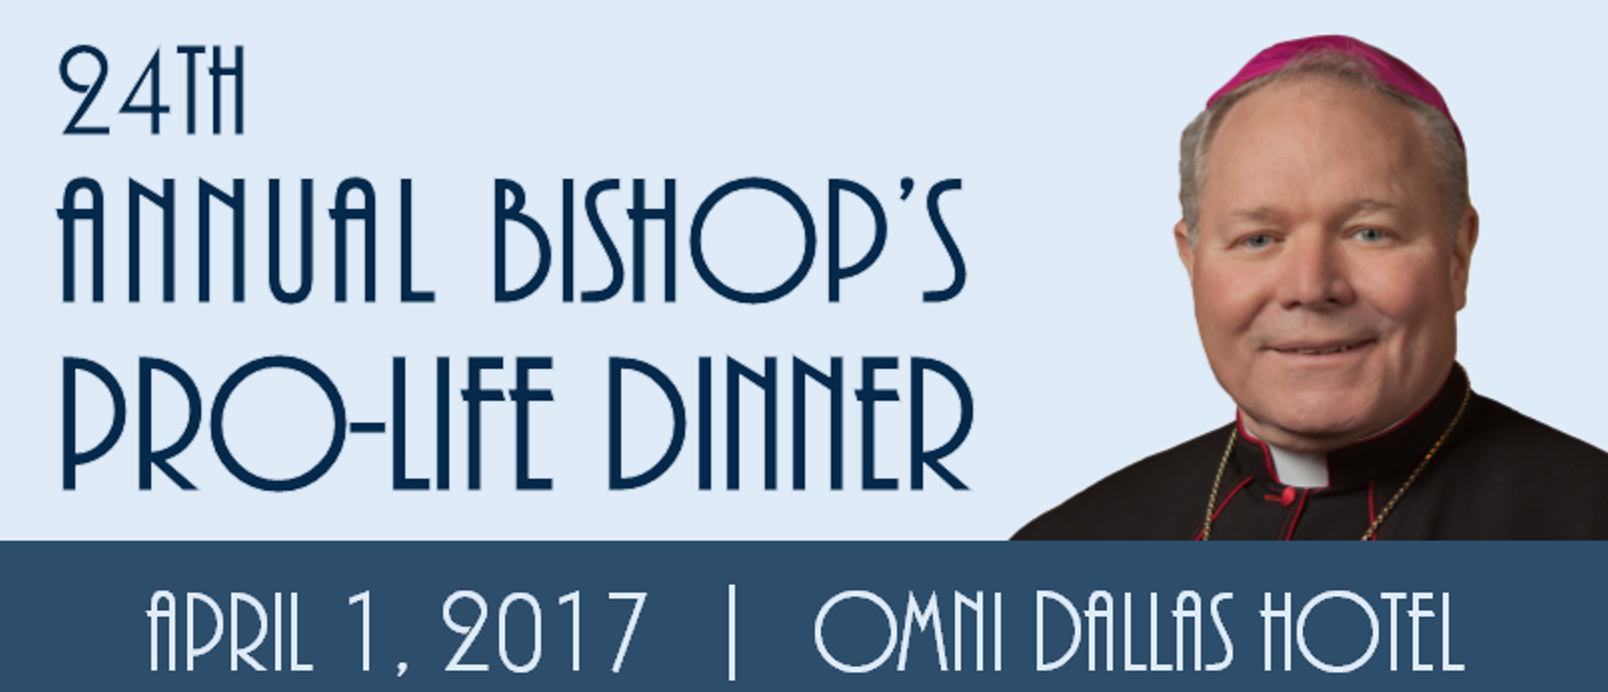 Bishop_Dinner_2017_banner.png